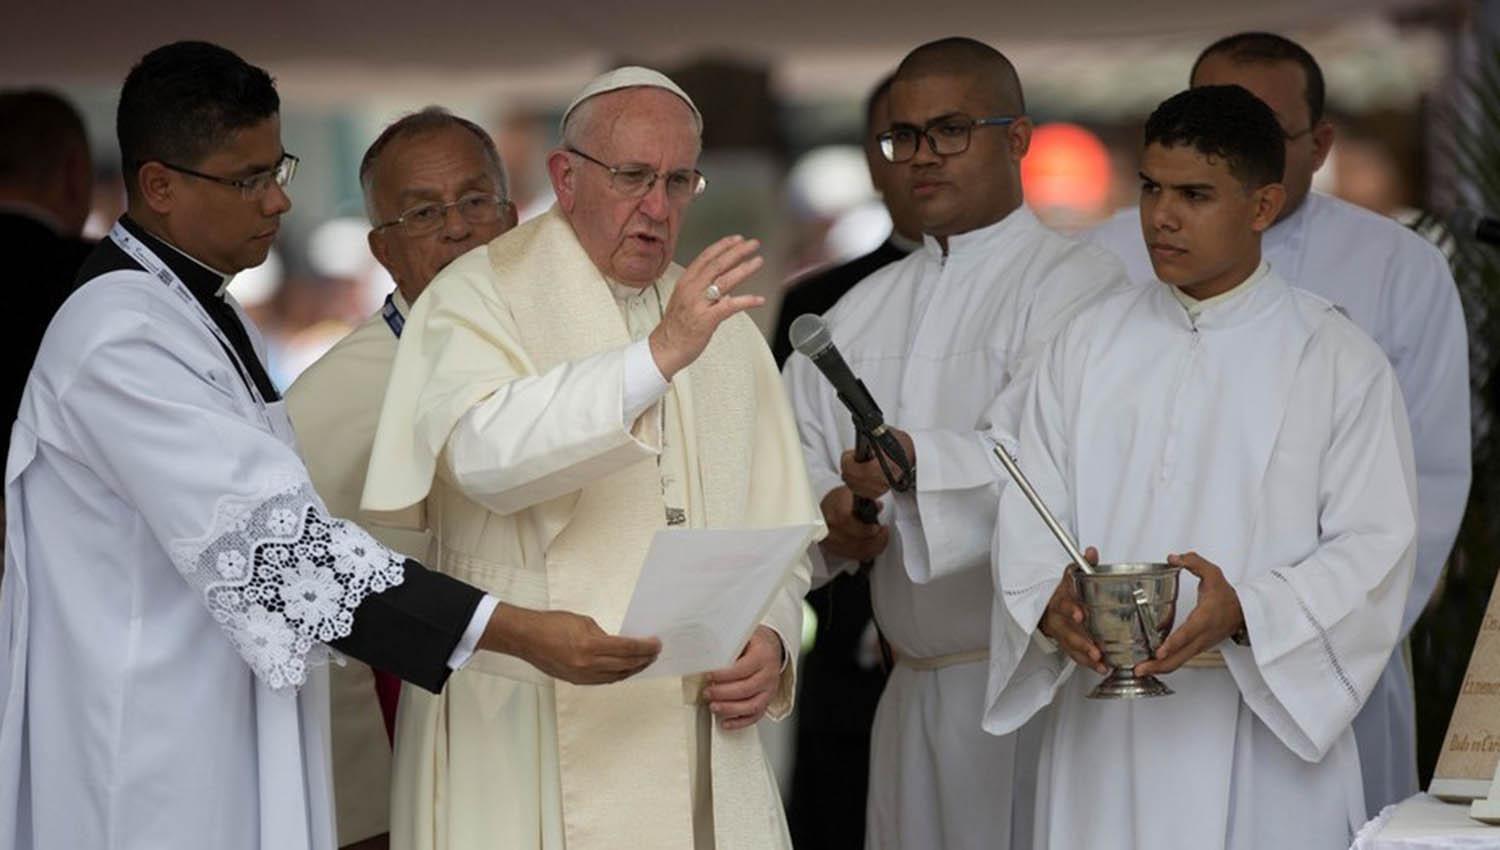 El papa Francisco participó en una ceremonia hoy en el barrio San Francisco en Cartagena. FOTO TOMADA DE CLARIN.COM